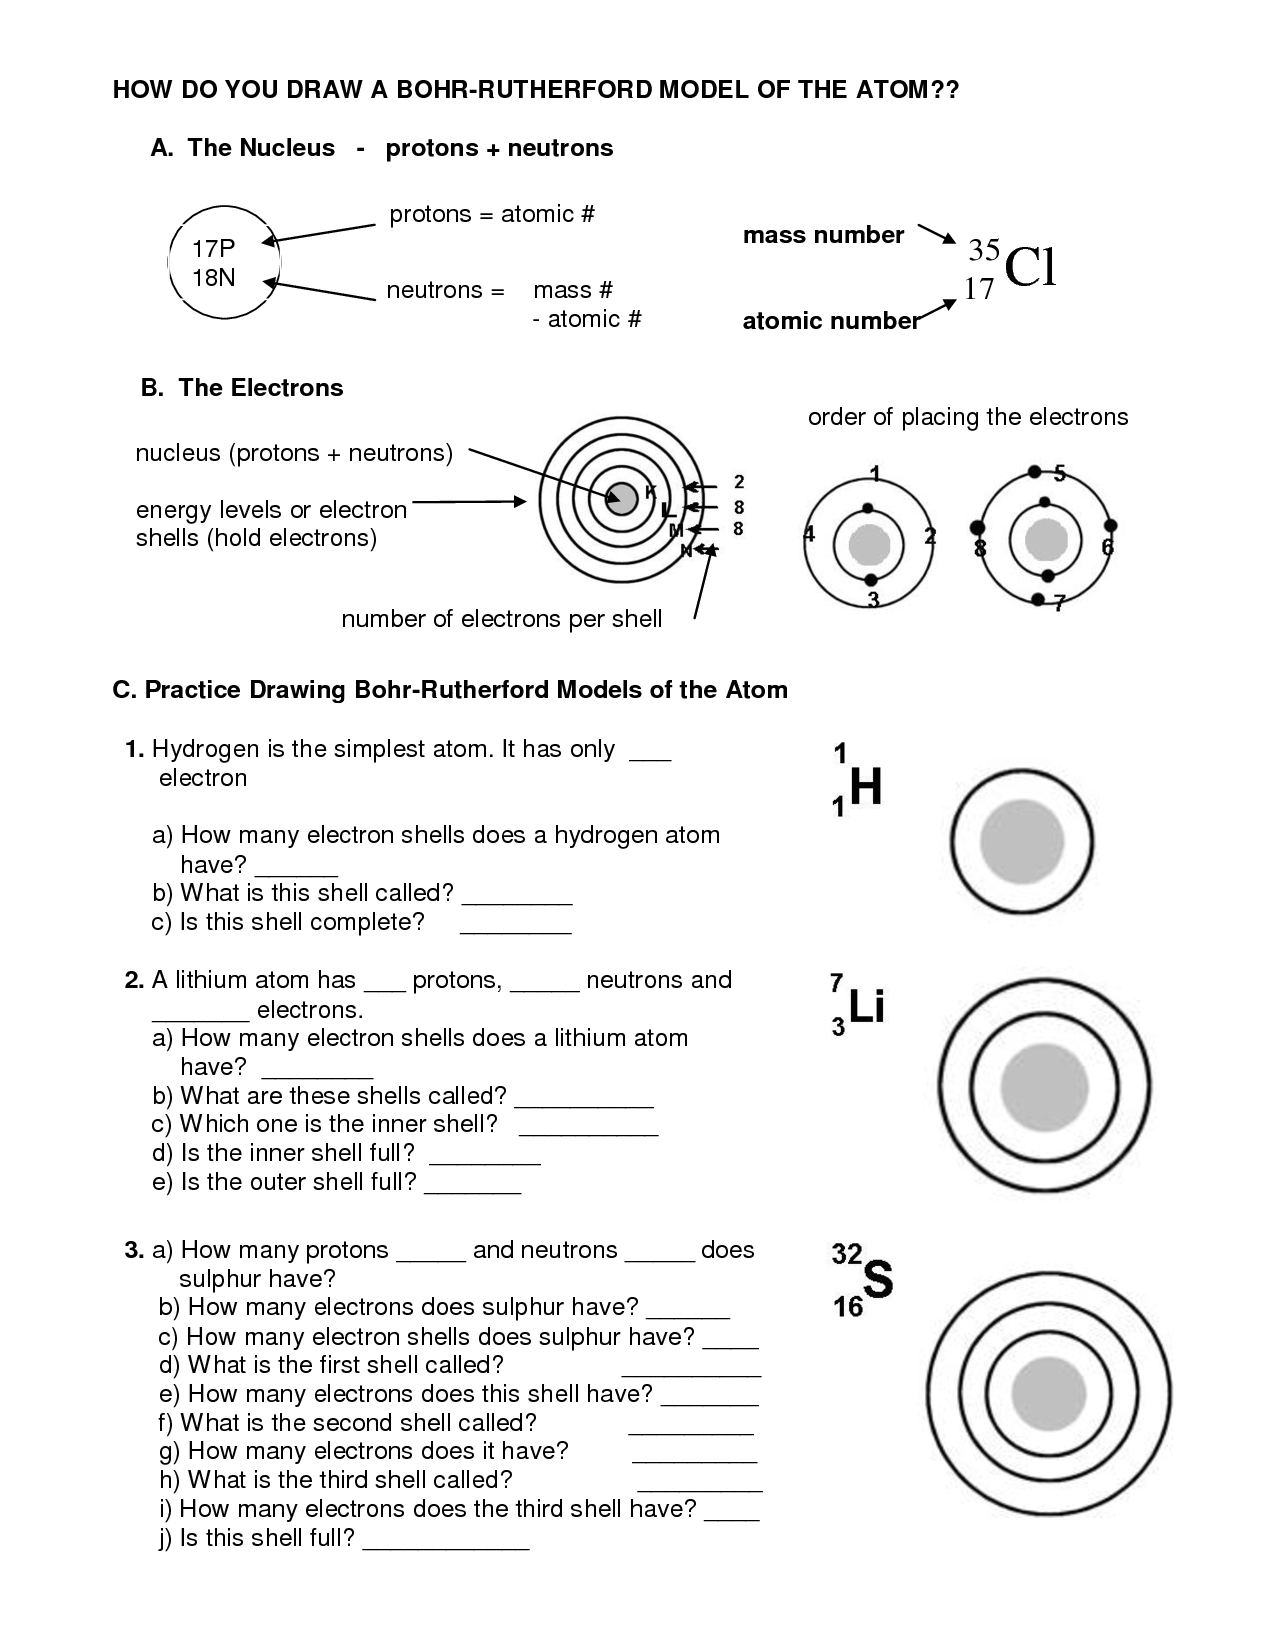 How Do You Draw a Bohr Model Image